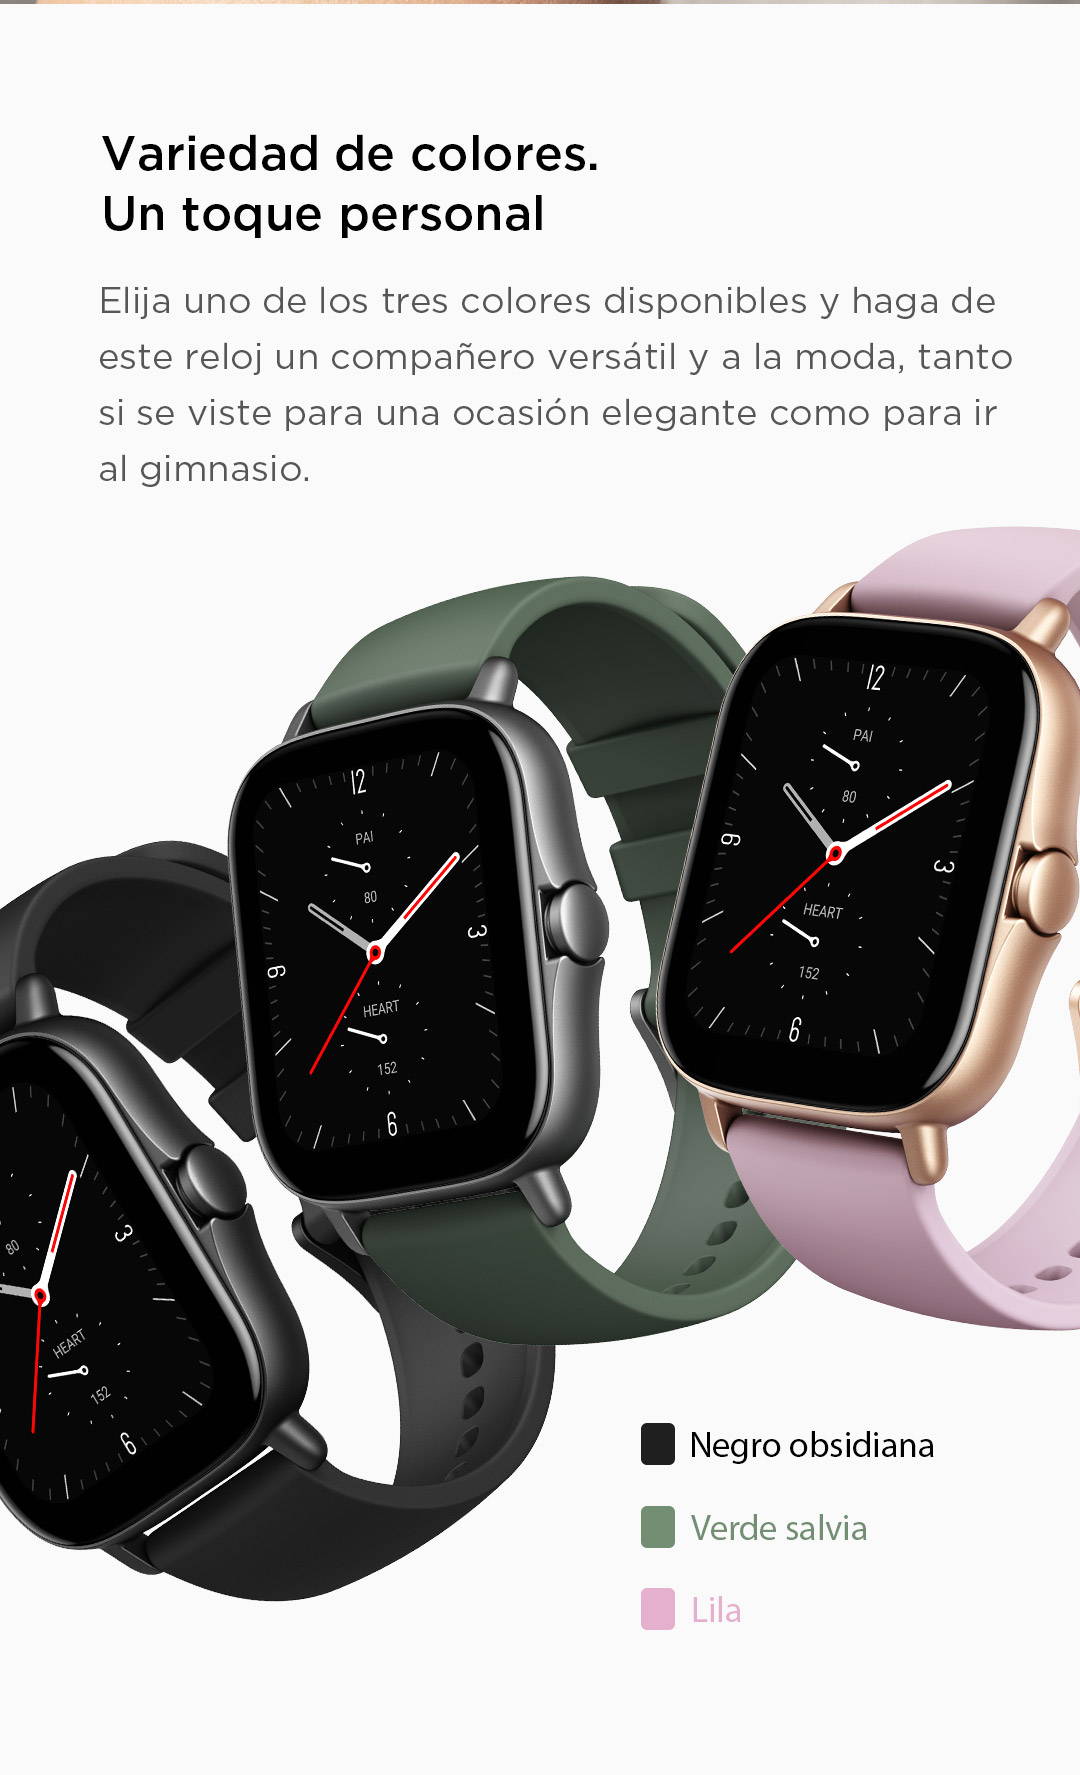 Amazfit GTS 2e – Reloj inteligente para mujer morado y GTS 2 Mini reloj  inteligente para hombre Android iPhone Alexa integrado duración de la